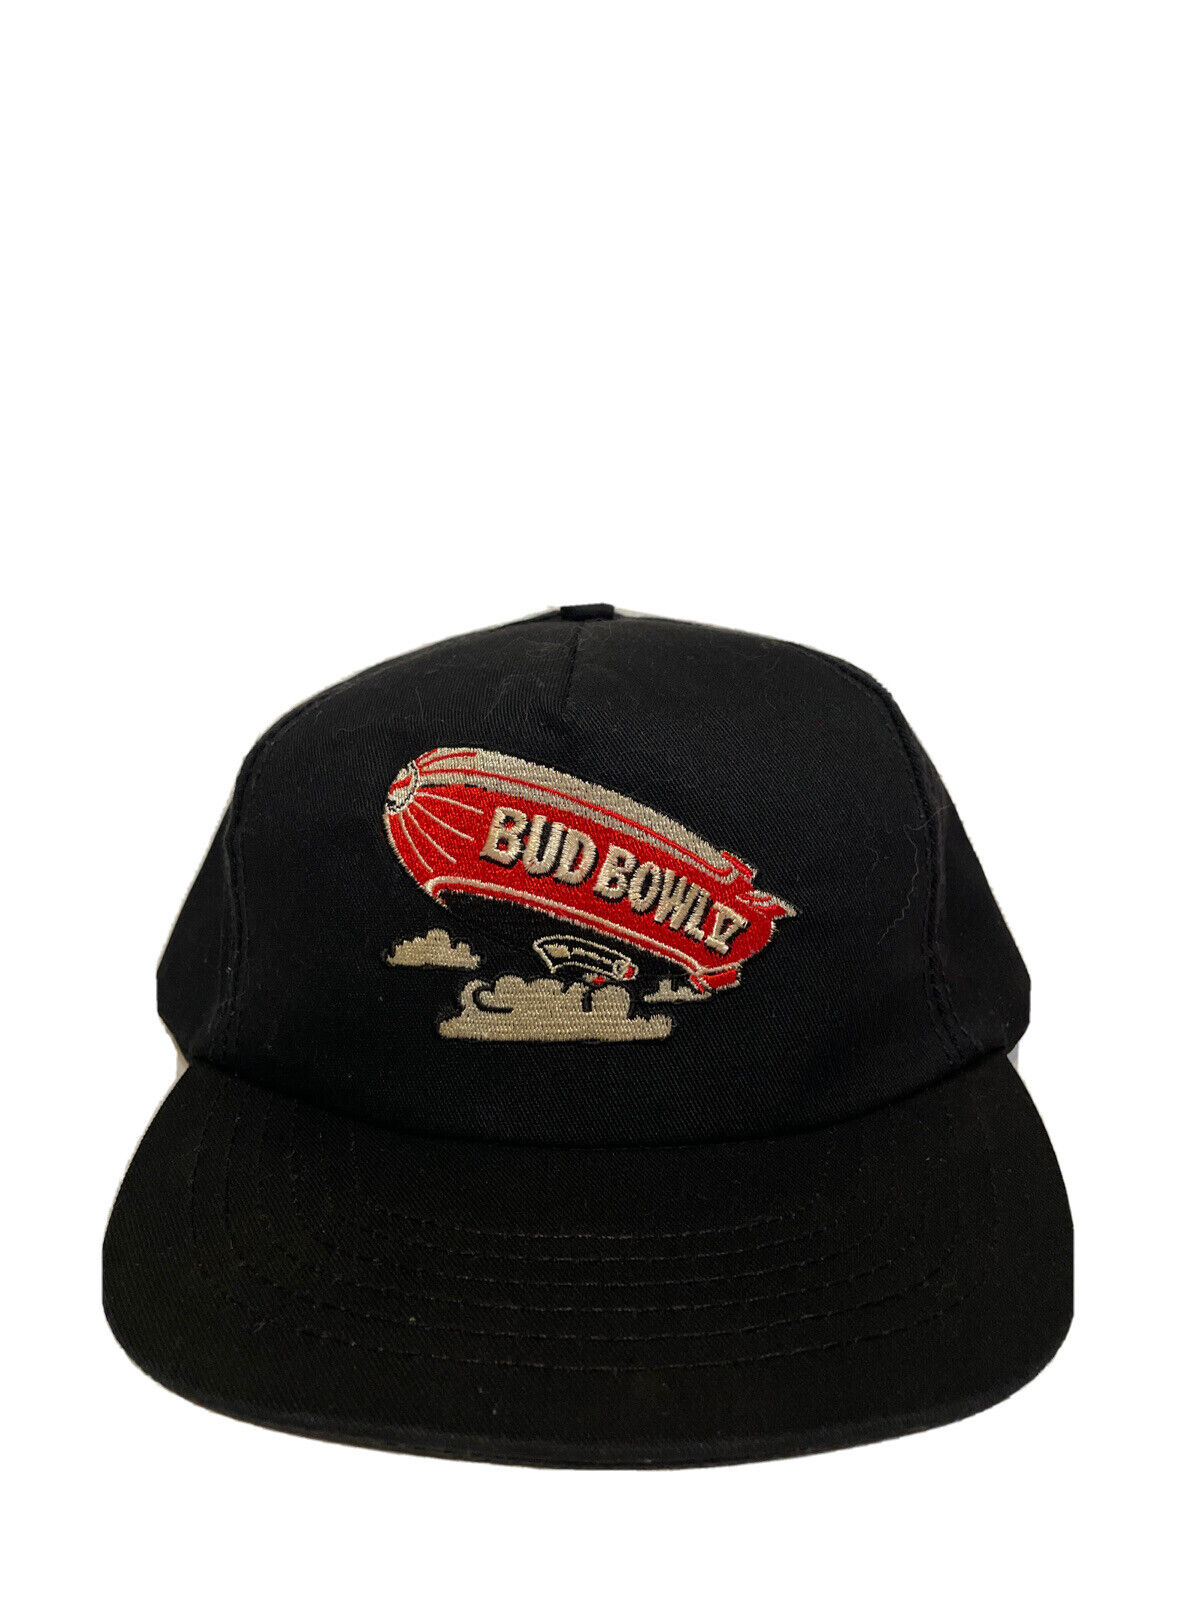 Vintage 1993 Bud Bowl V Snapback Hat Cap Embroidered Black